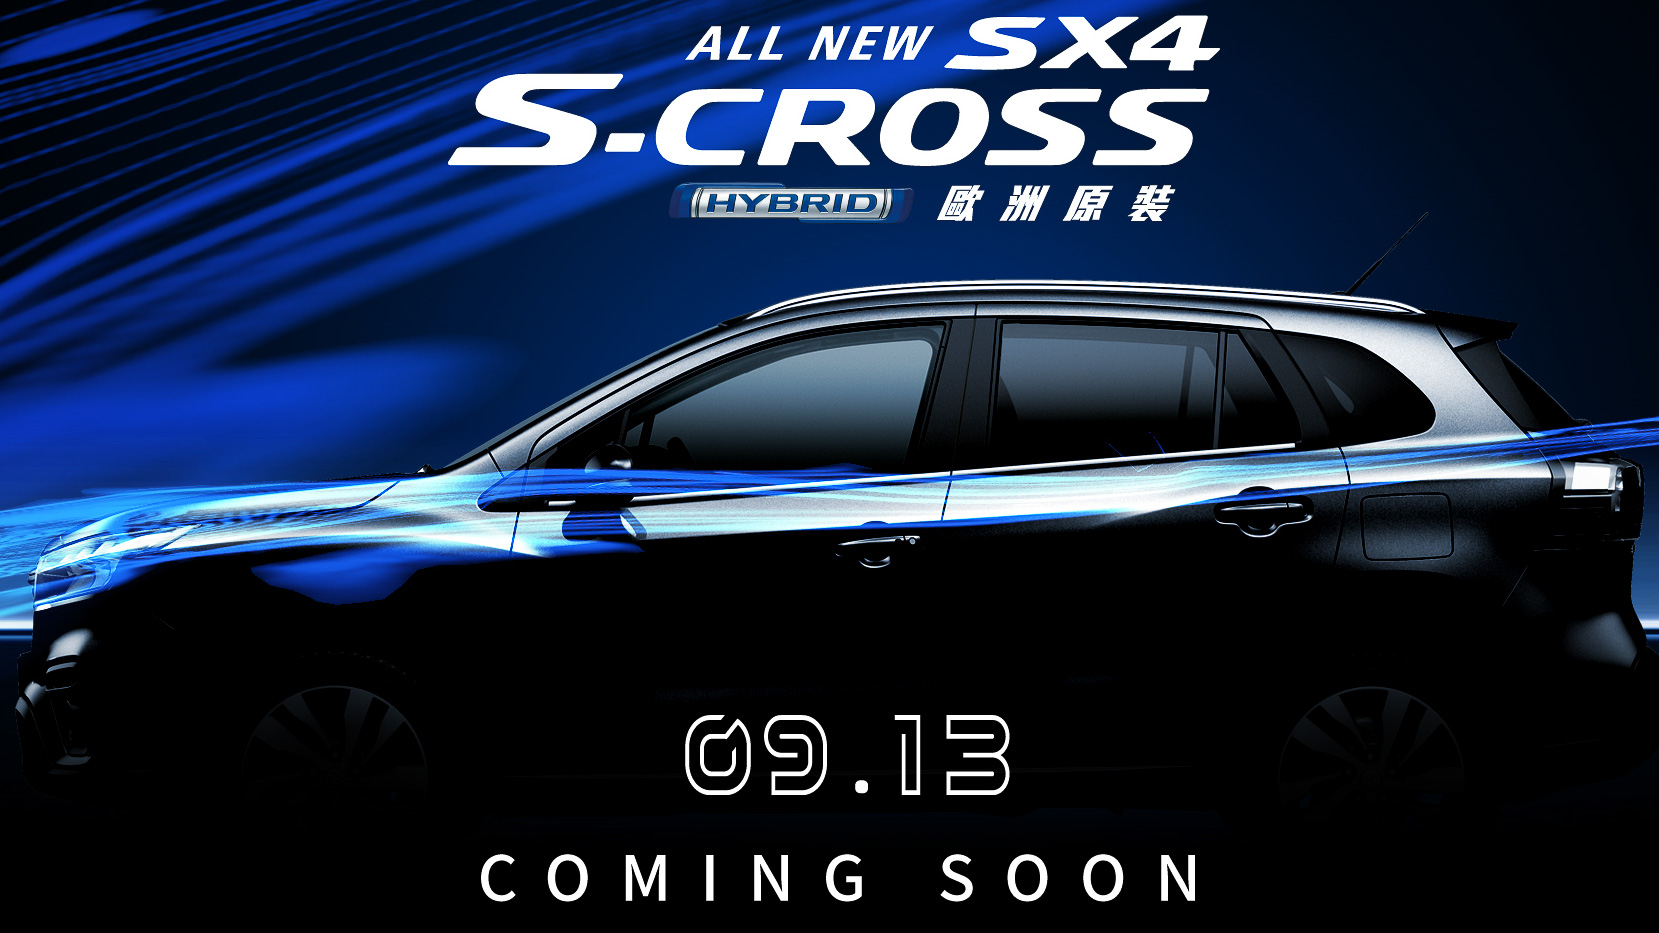 Suzuki 定於 9 / 13 發表自家旗艦 SUV：S-Cross